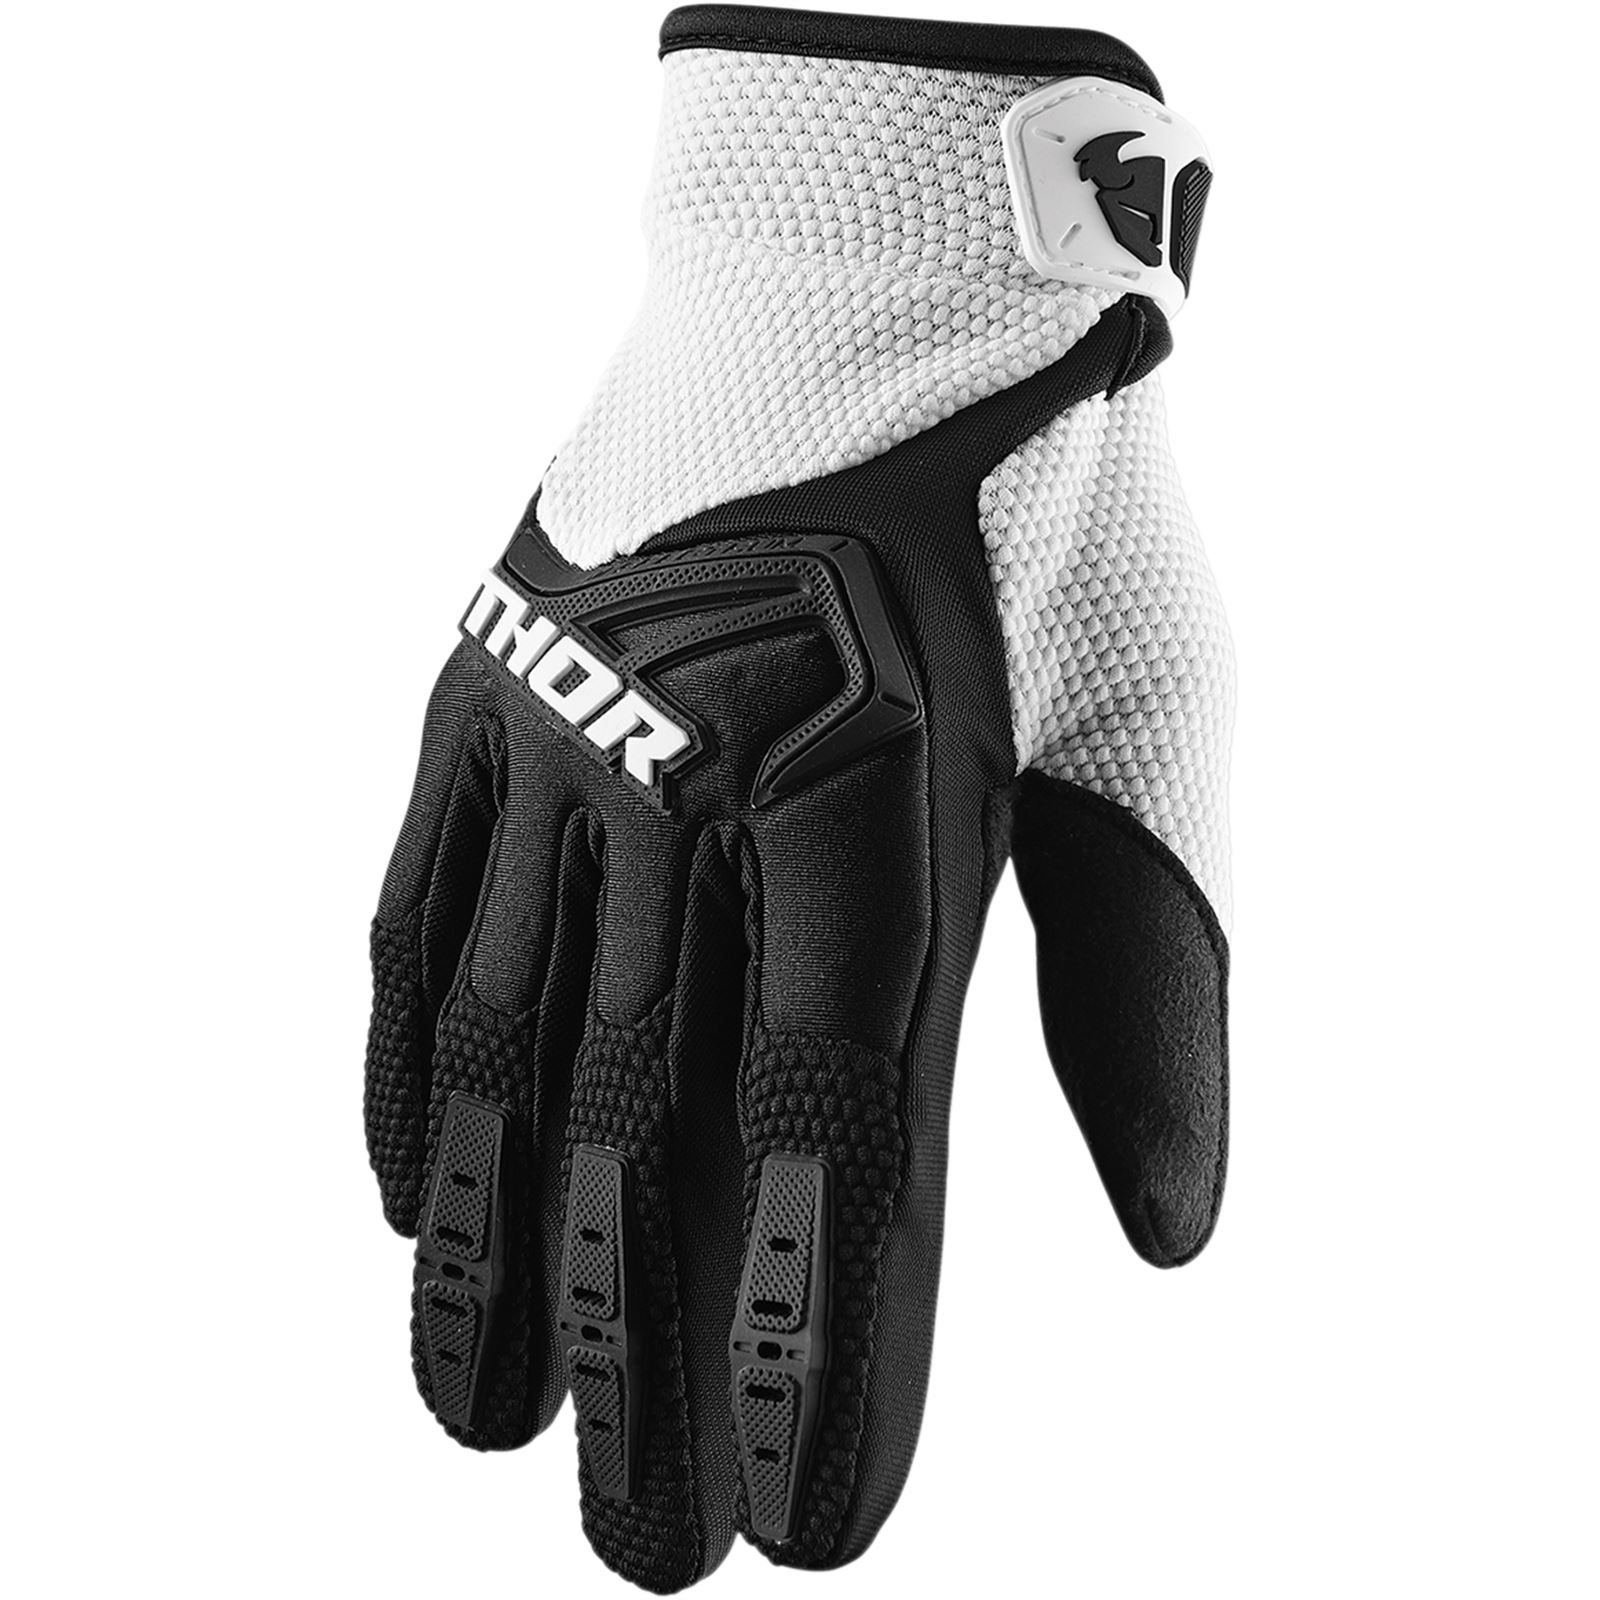 Thor Spectrum Gloves - Black/White - Large